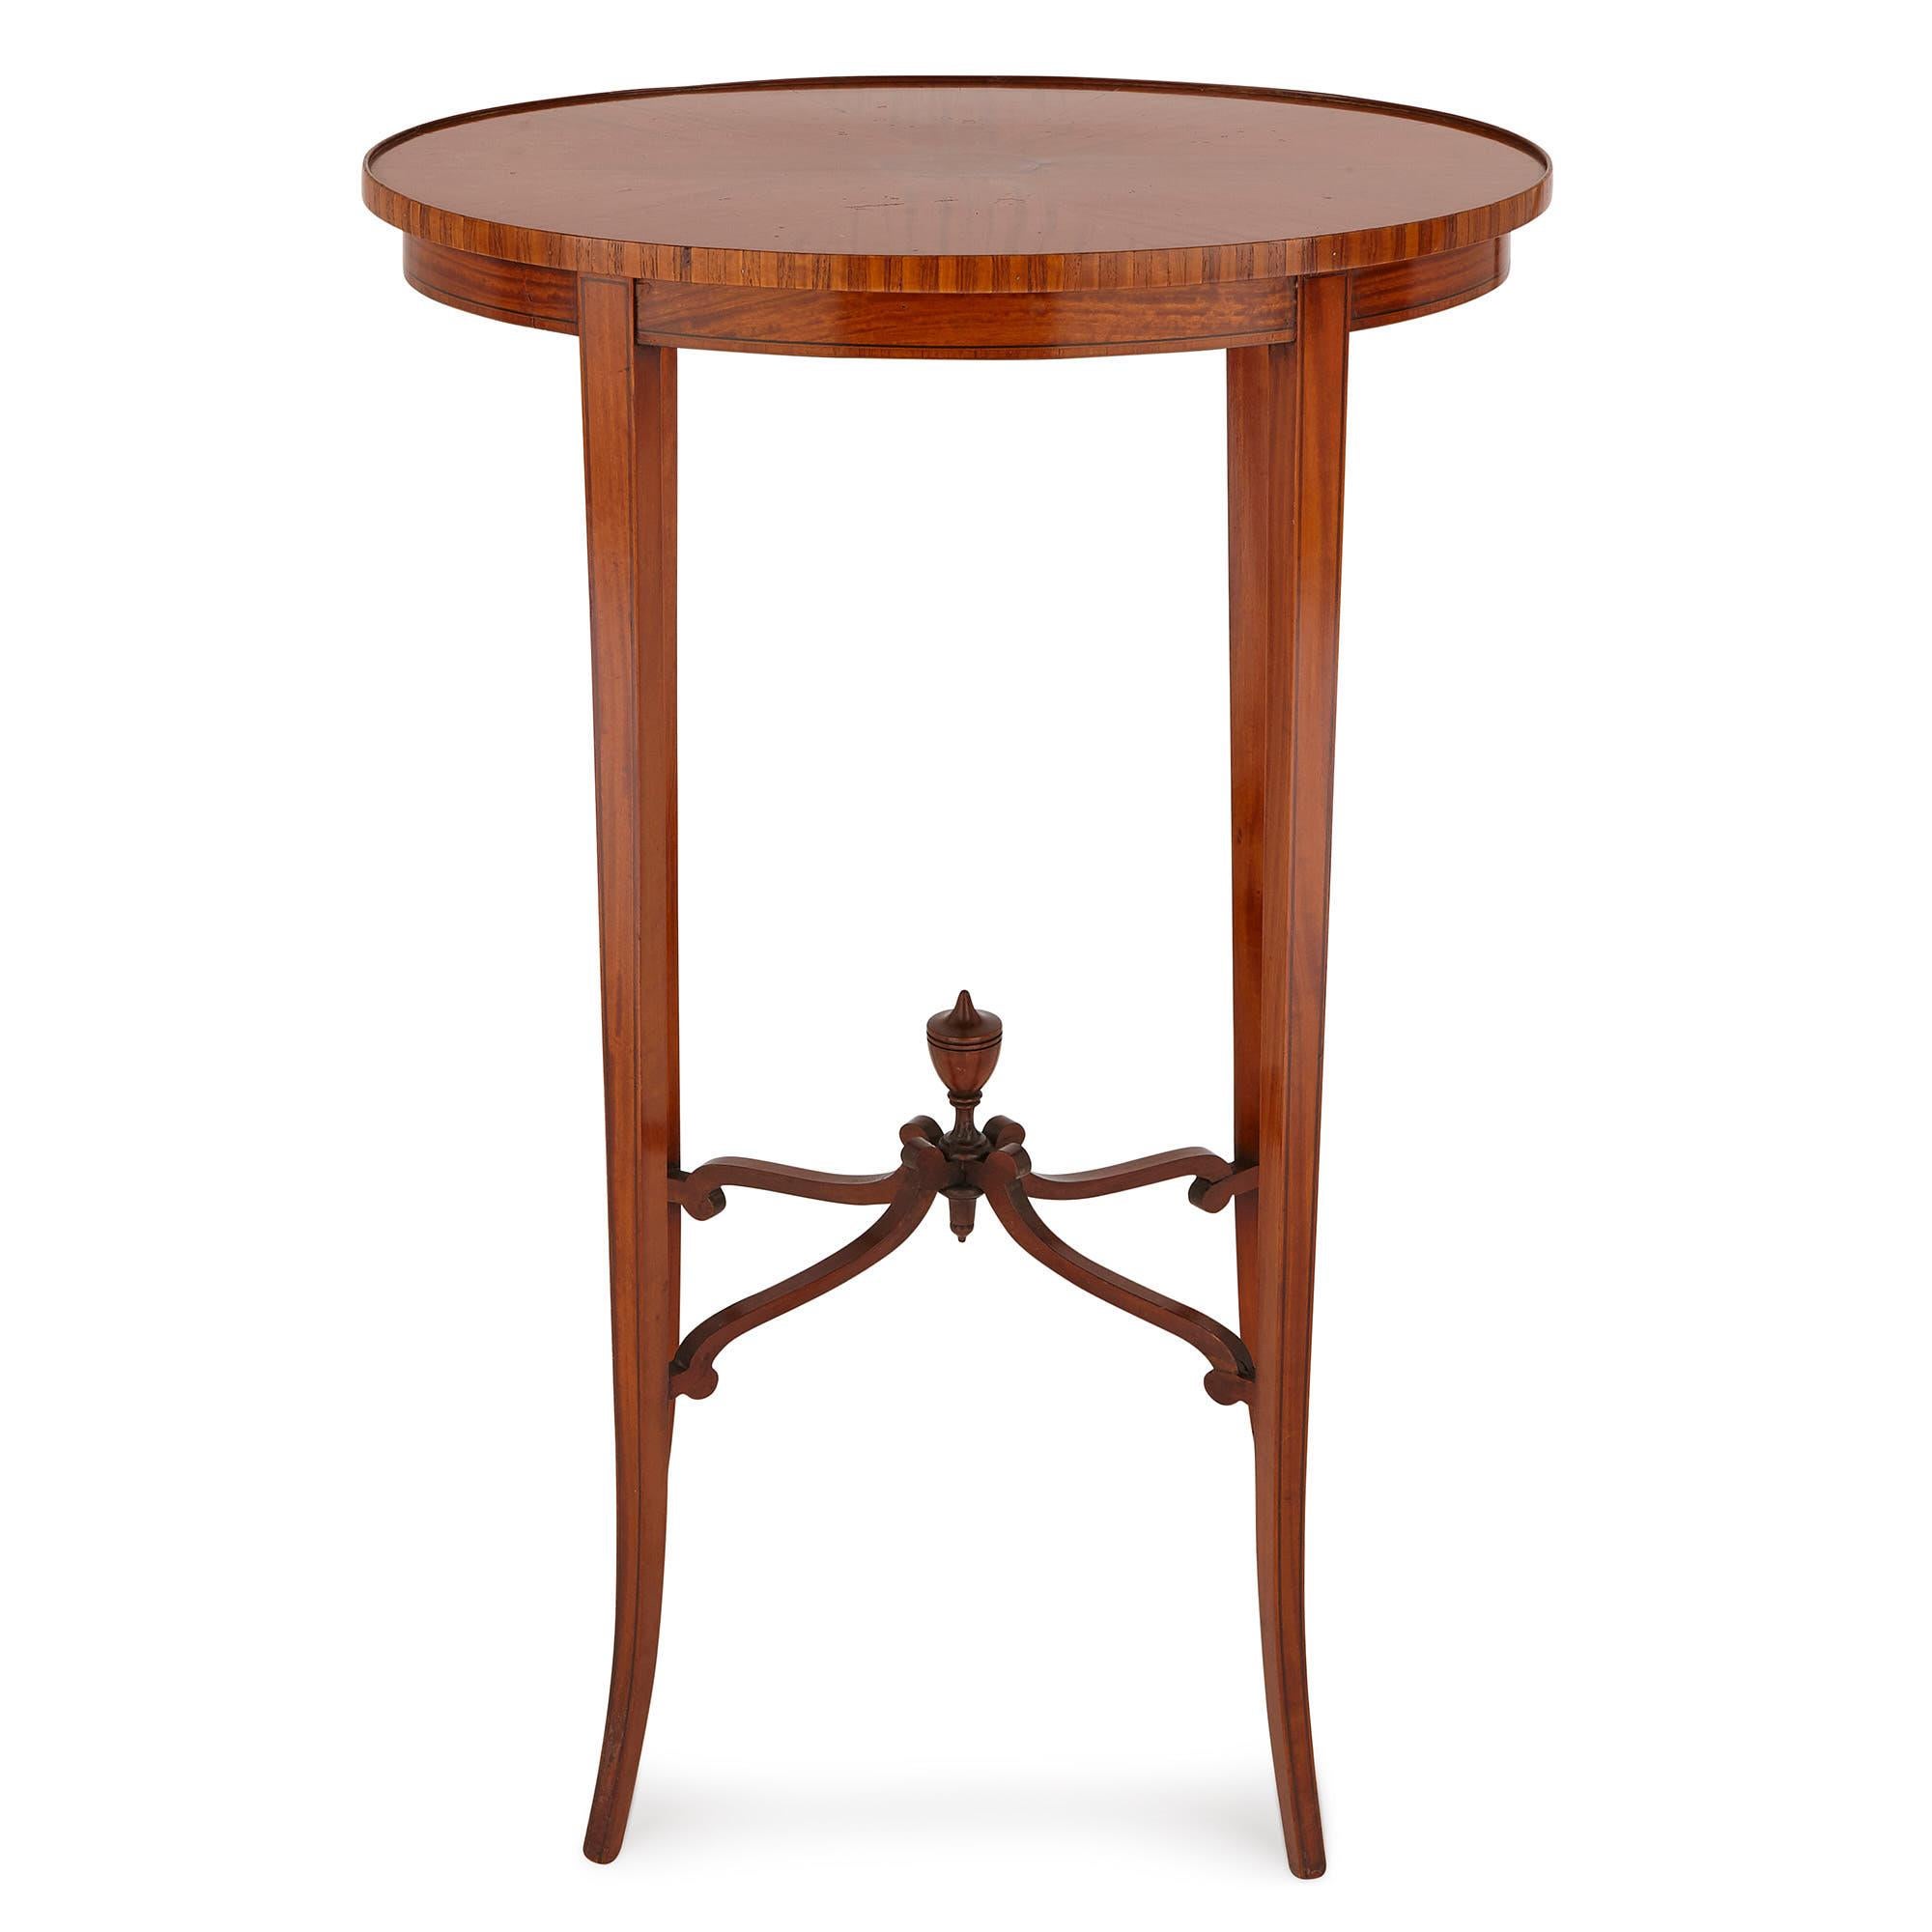 Dieser Tisch wurde im 19. Jahrhundert in England entwickelt. Er ist aus Satinholz gefertigt und mit einer Mahagoni-Lehre versehen. 

Der Tisch besteht aus einer ovalen Platte, die mit einem Parkettmuster versehen ist. Die Maserung der